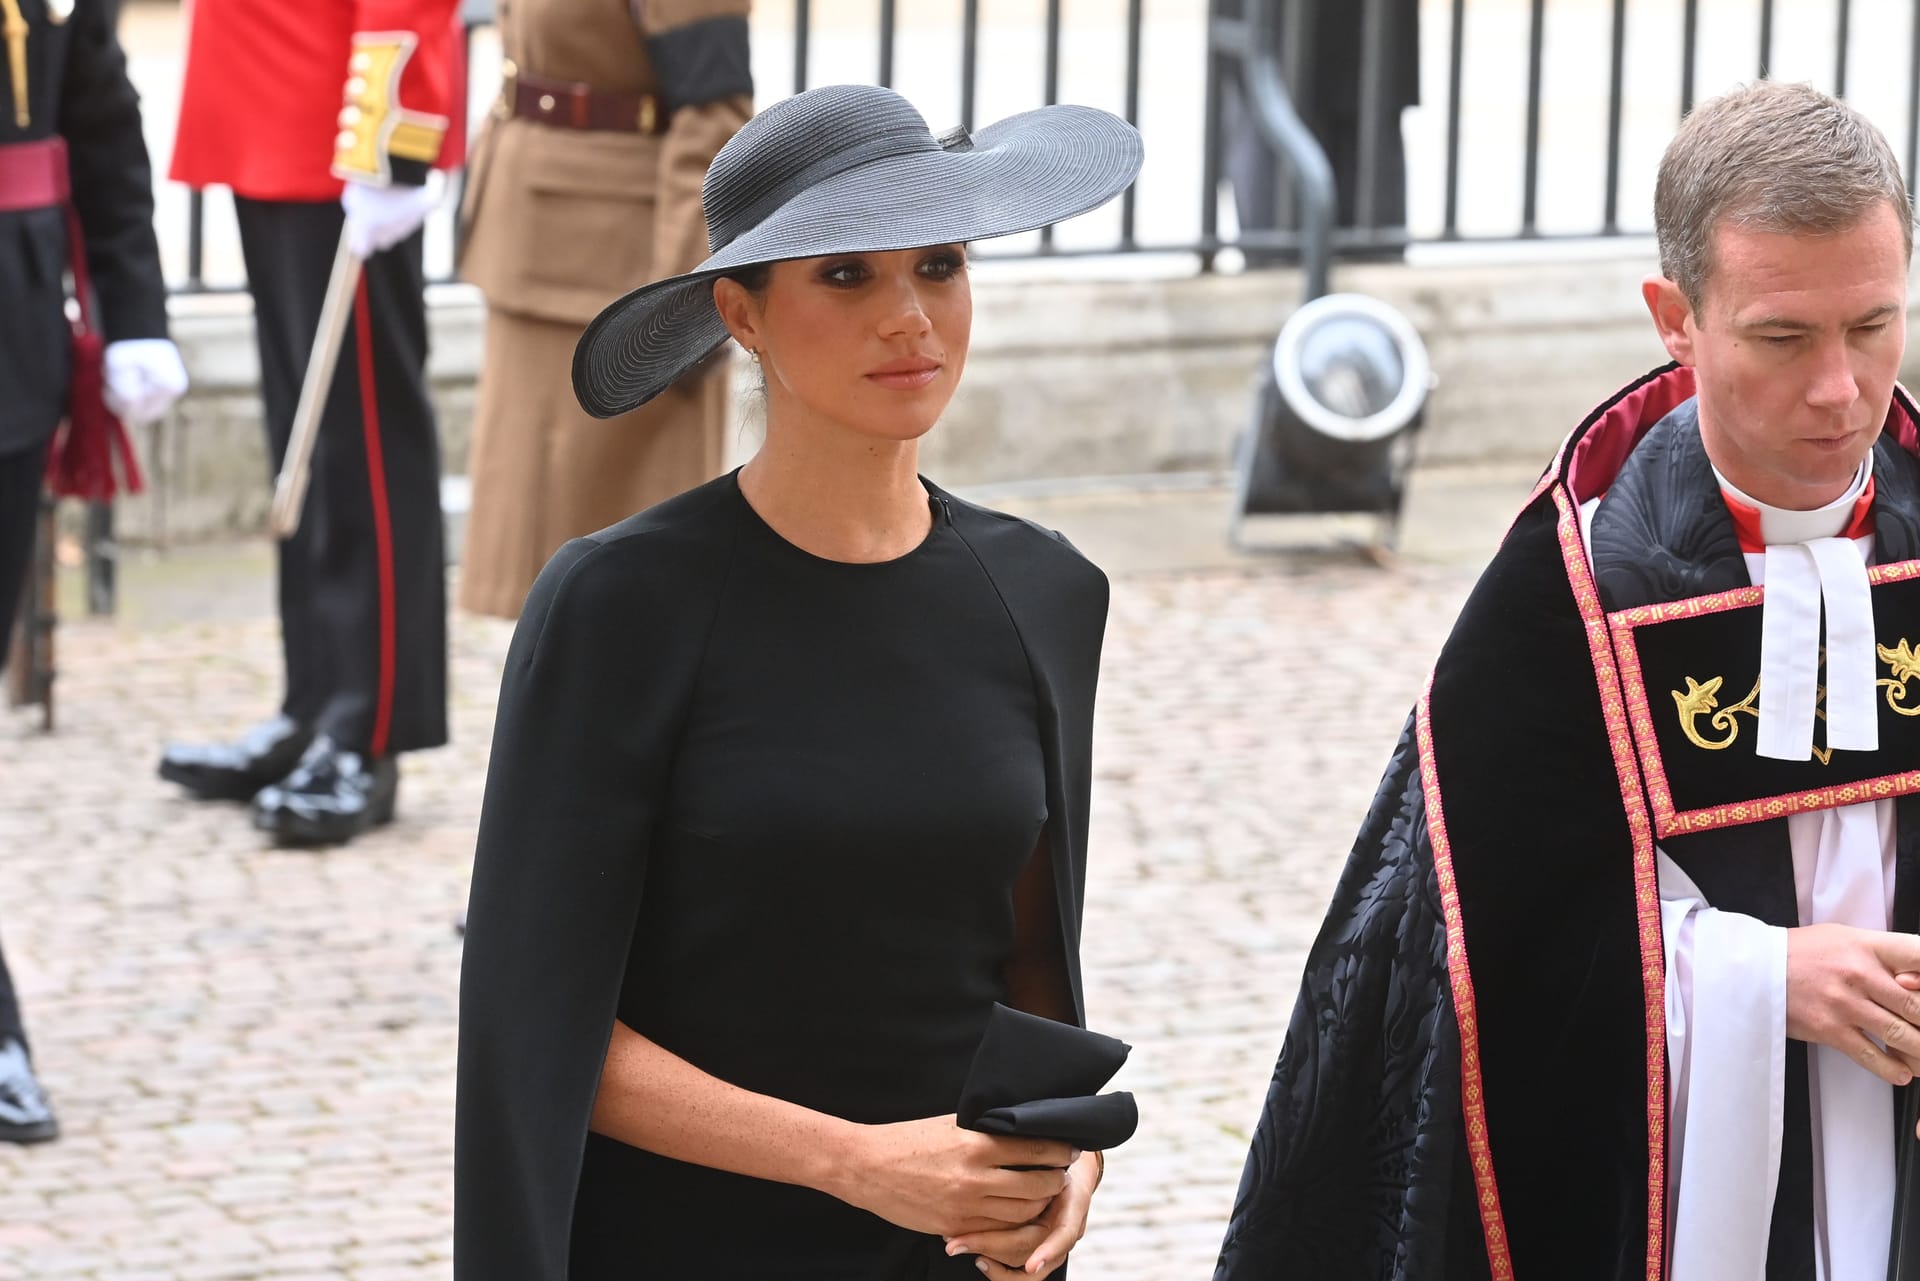 Herzogin Meghan nach dem Gottesdienst für die Queen: Die Frau von Prinz Harry trägt ein schlichtes schwarzes Kleid, darüber einen schwarzen Mantel und einen großen schwarzen Hut. Ihre Haare hat sie zu einem Knoten gebunden.